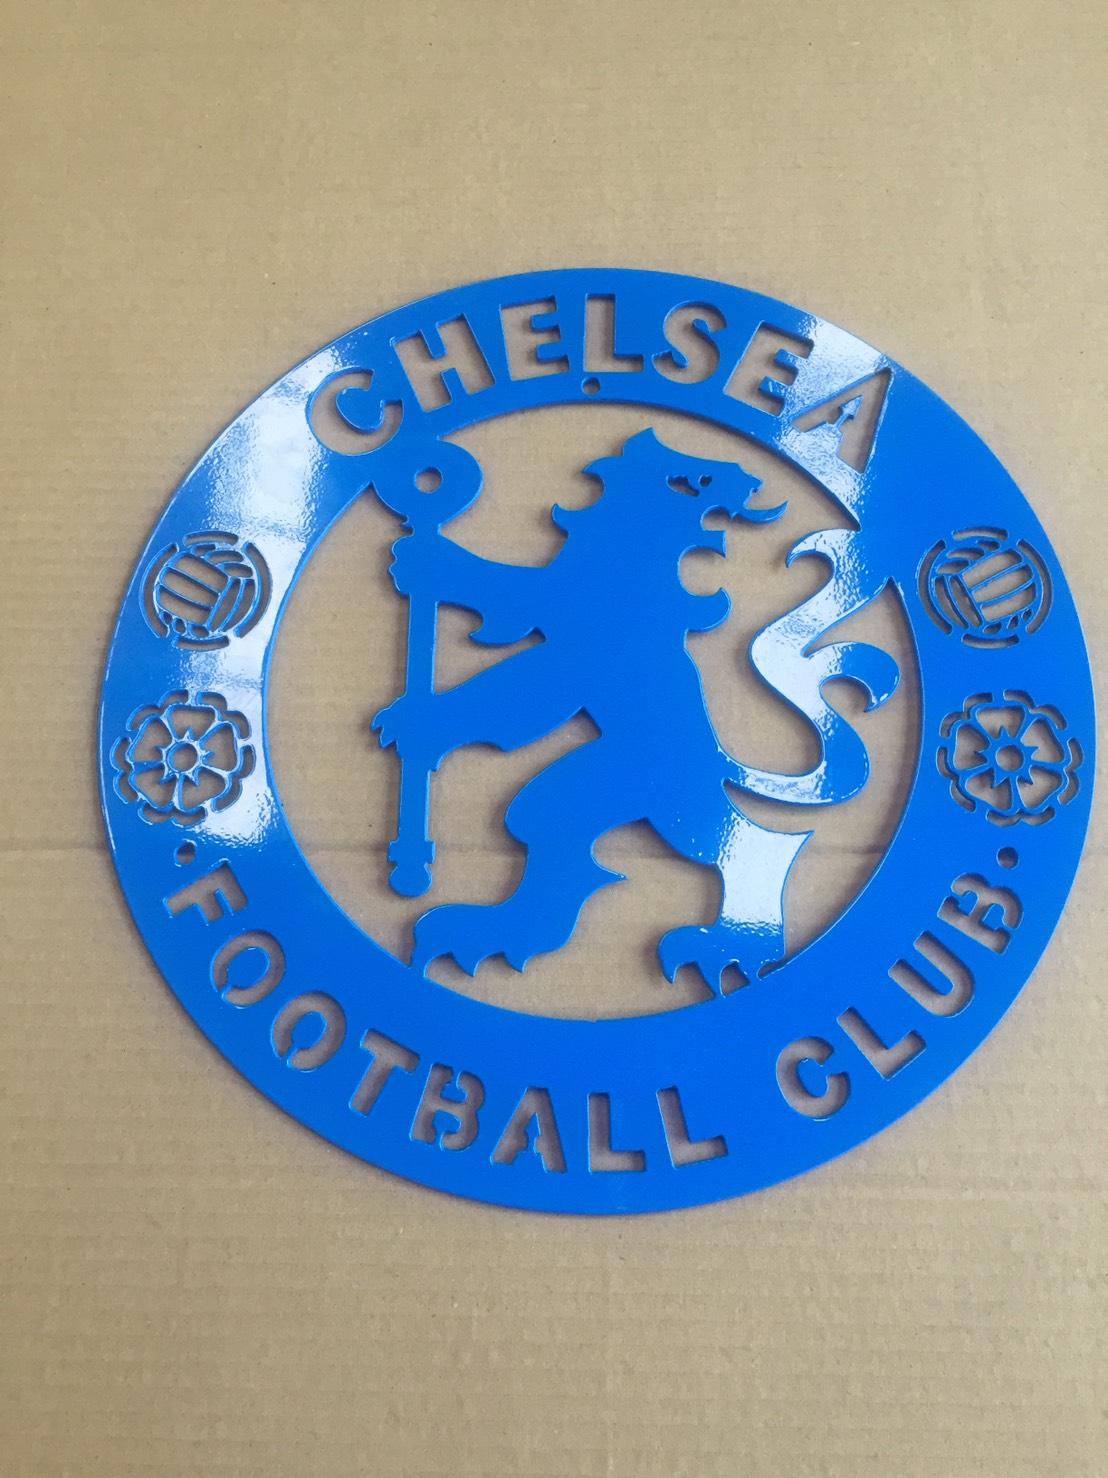 ตรา โลโก้ สโมสร เชลซี ( Chelsea Football Club ) - ผลิตจากเหล็กหนา หนา1.5 มิล - สีอบพาวเดอร์โค๊ทกันสนิม ทนแดด ทนฝน - ติดตกแต่งผนัง บ้าน ร้านค้า